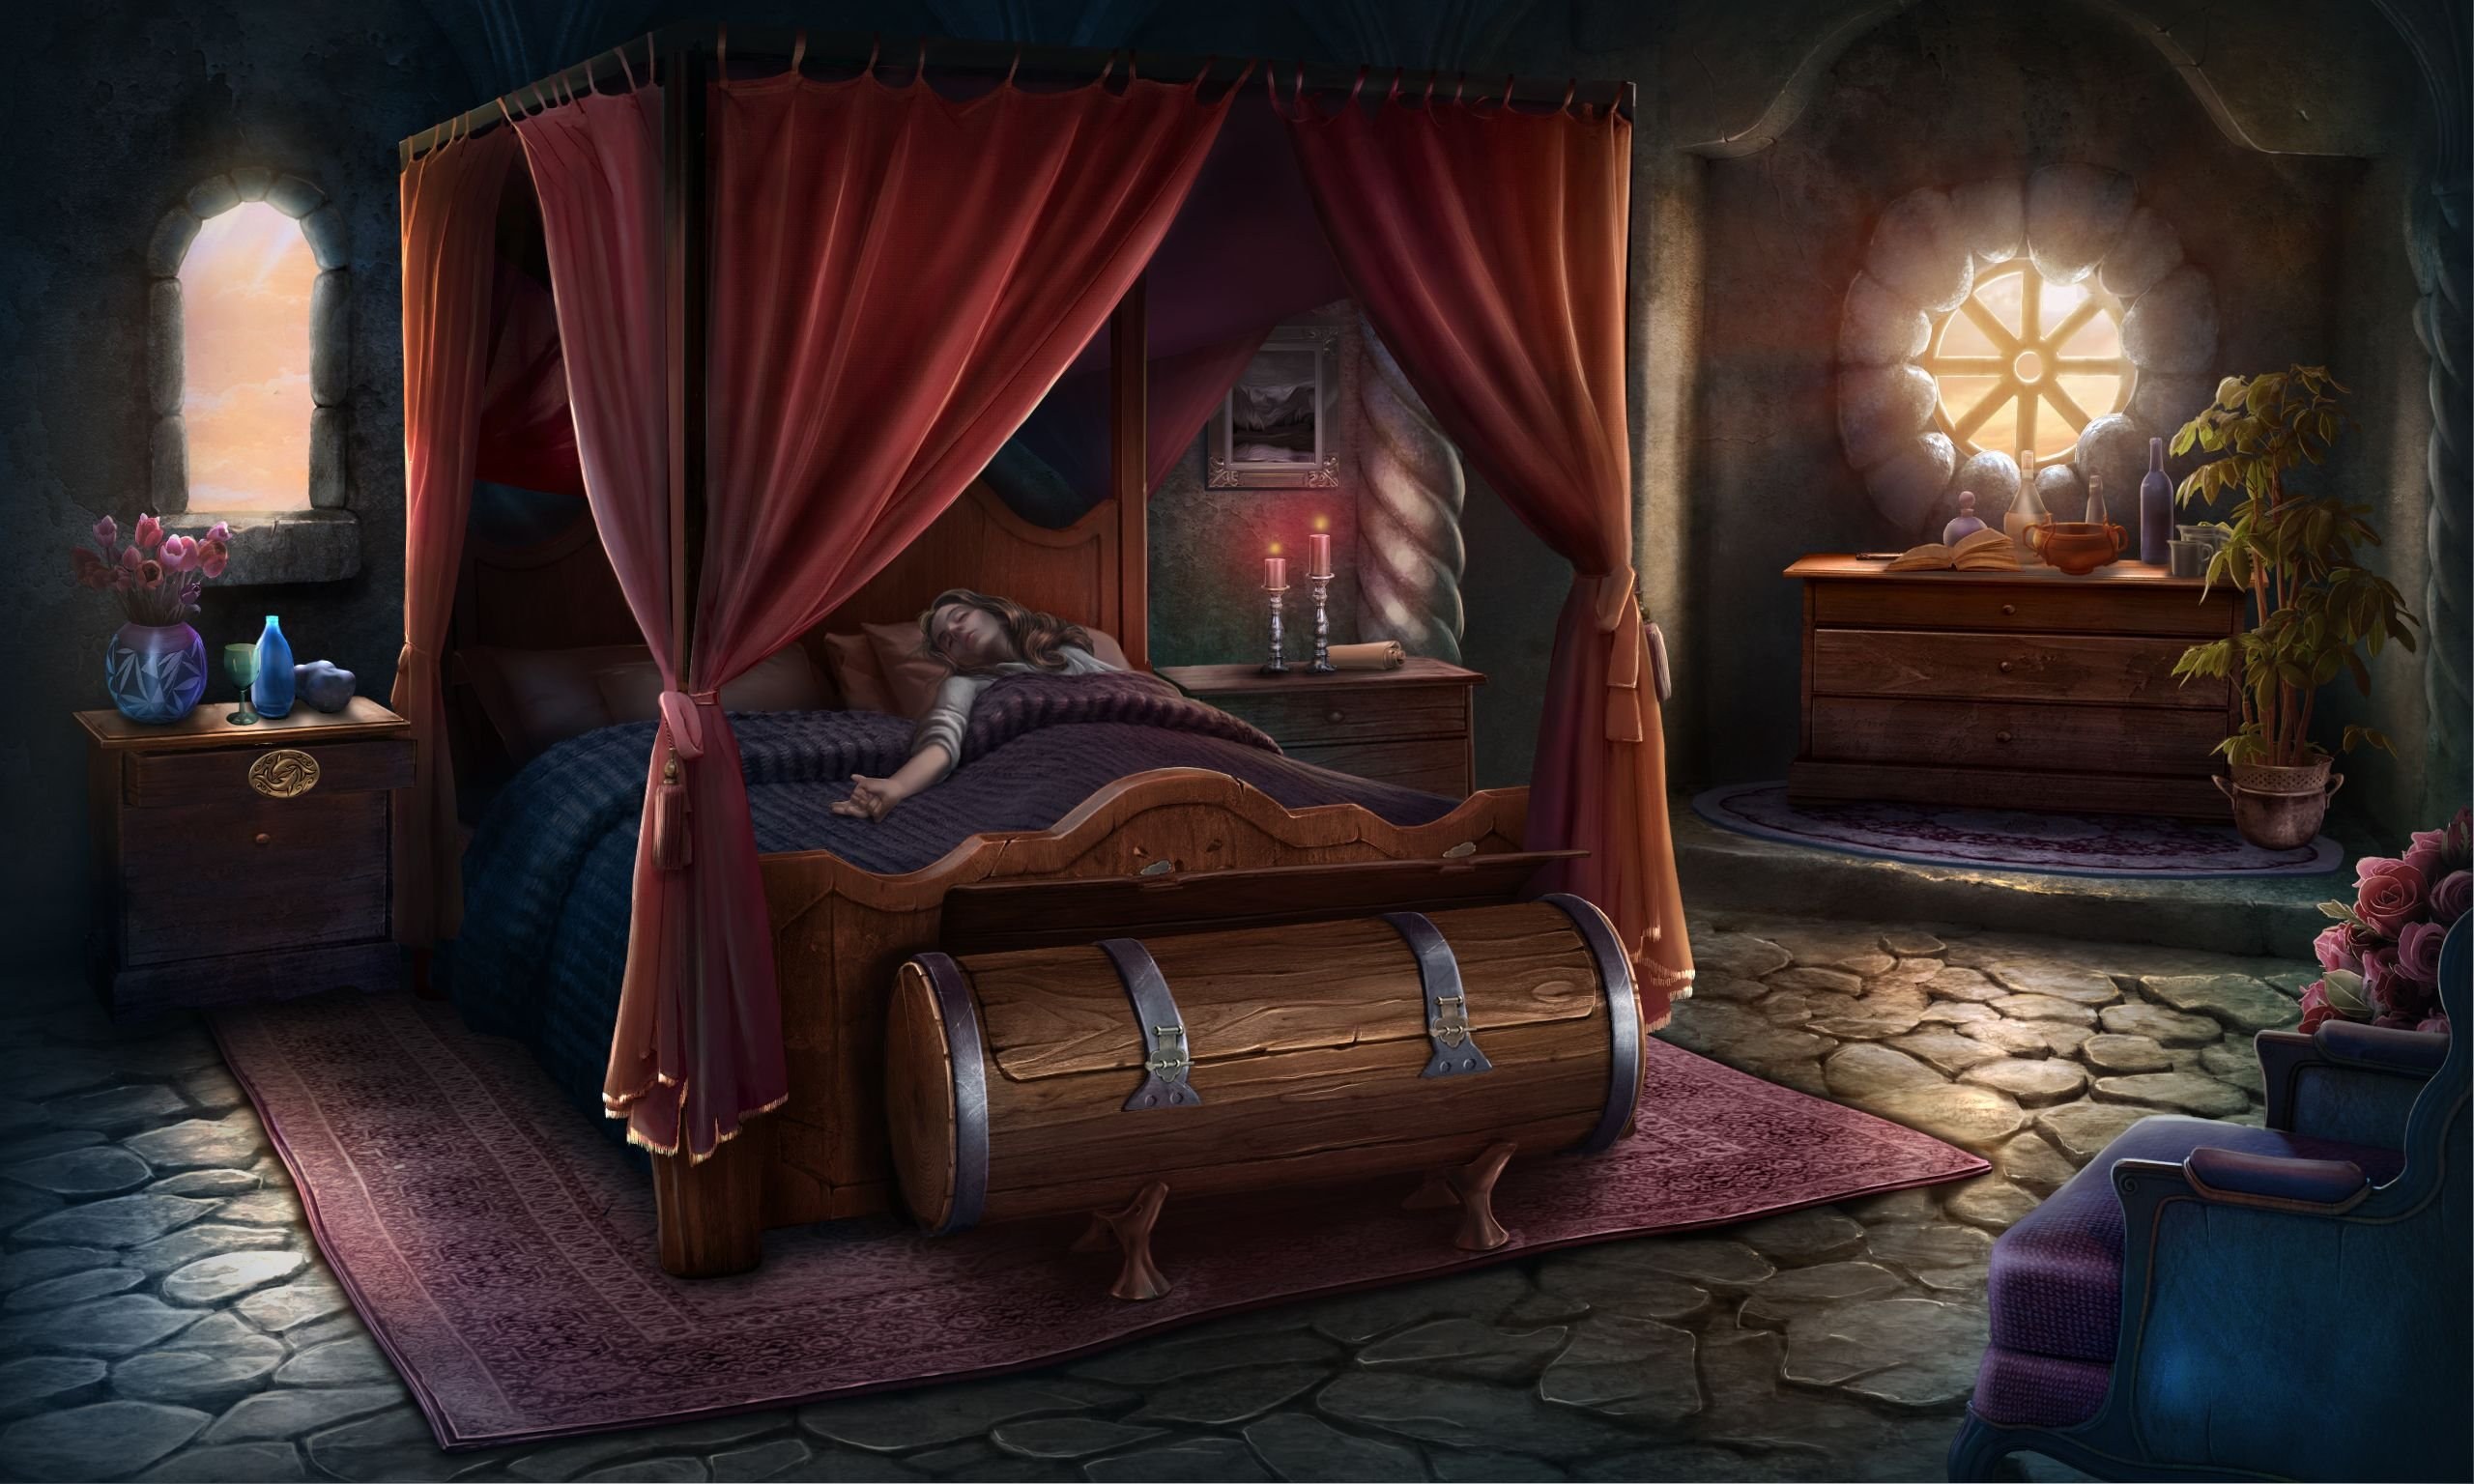 Спальня в волшебном стиле